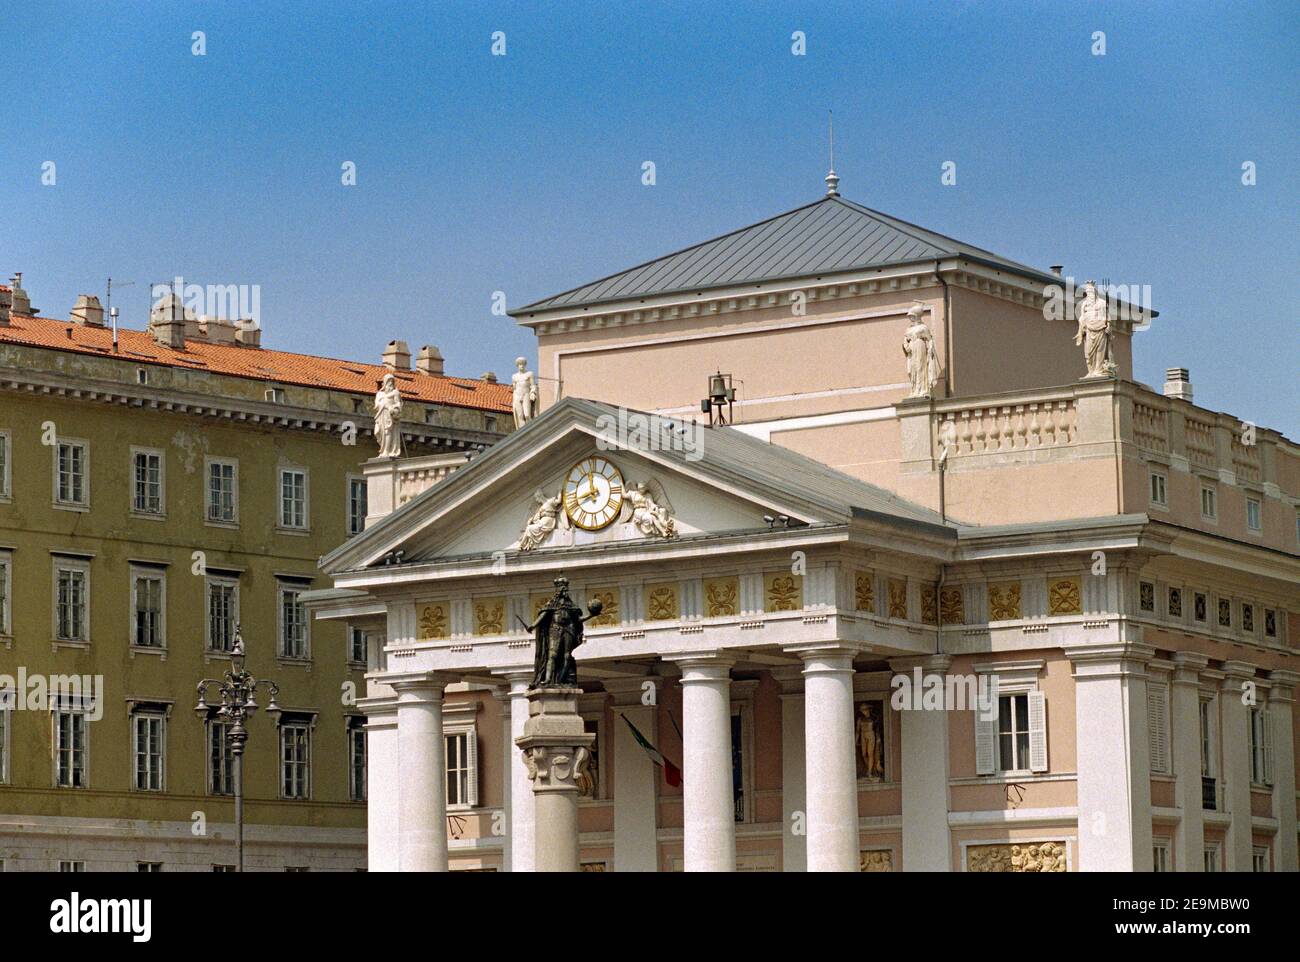 Italy, Friuli Venezia Giulia, Trieste,  Palazzo della Borsa Vecchia or Old Stock Exchange Building Stock Photo